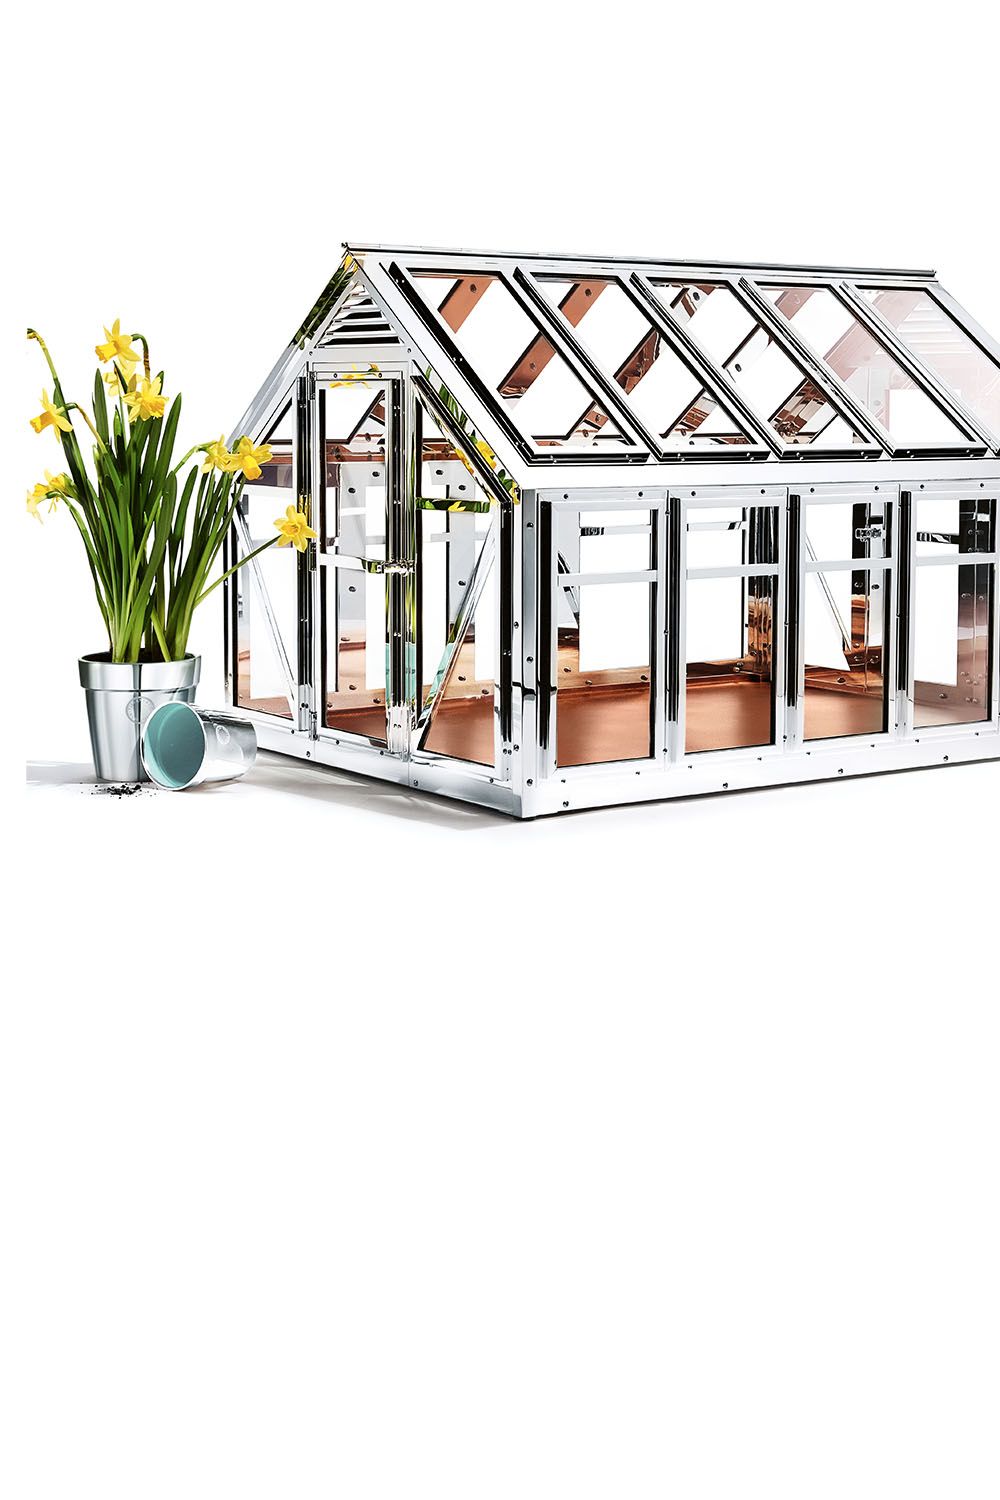 tiffany's greenhouse